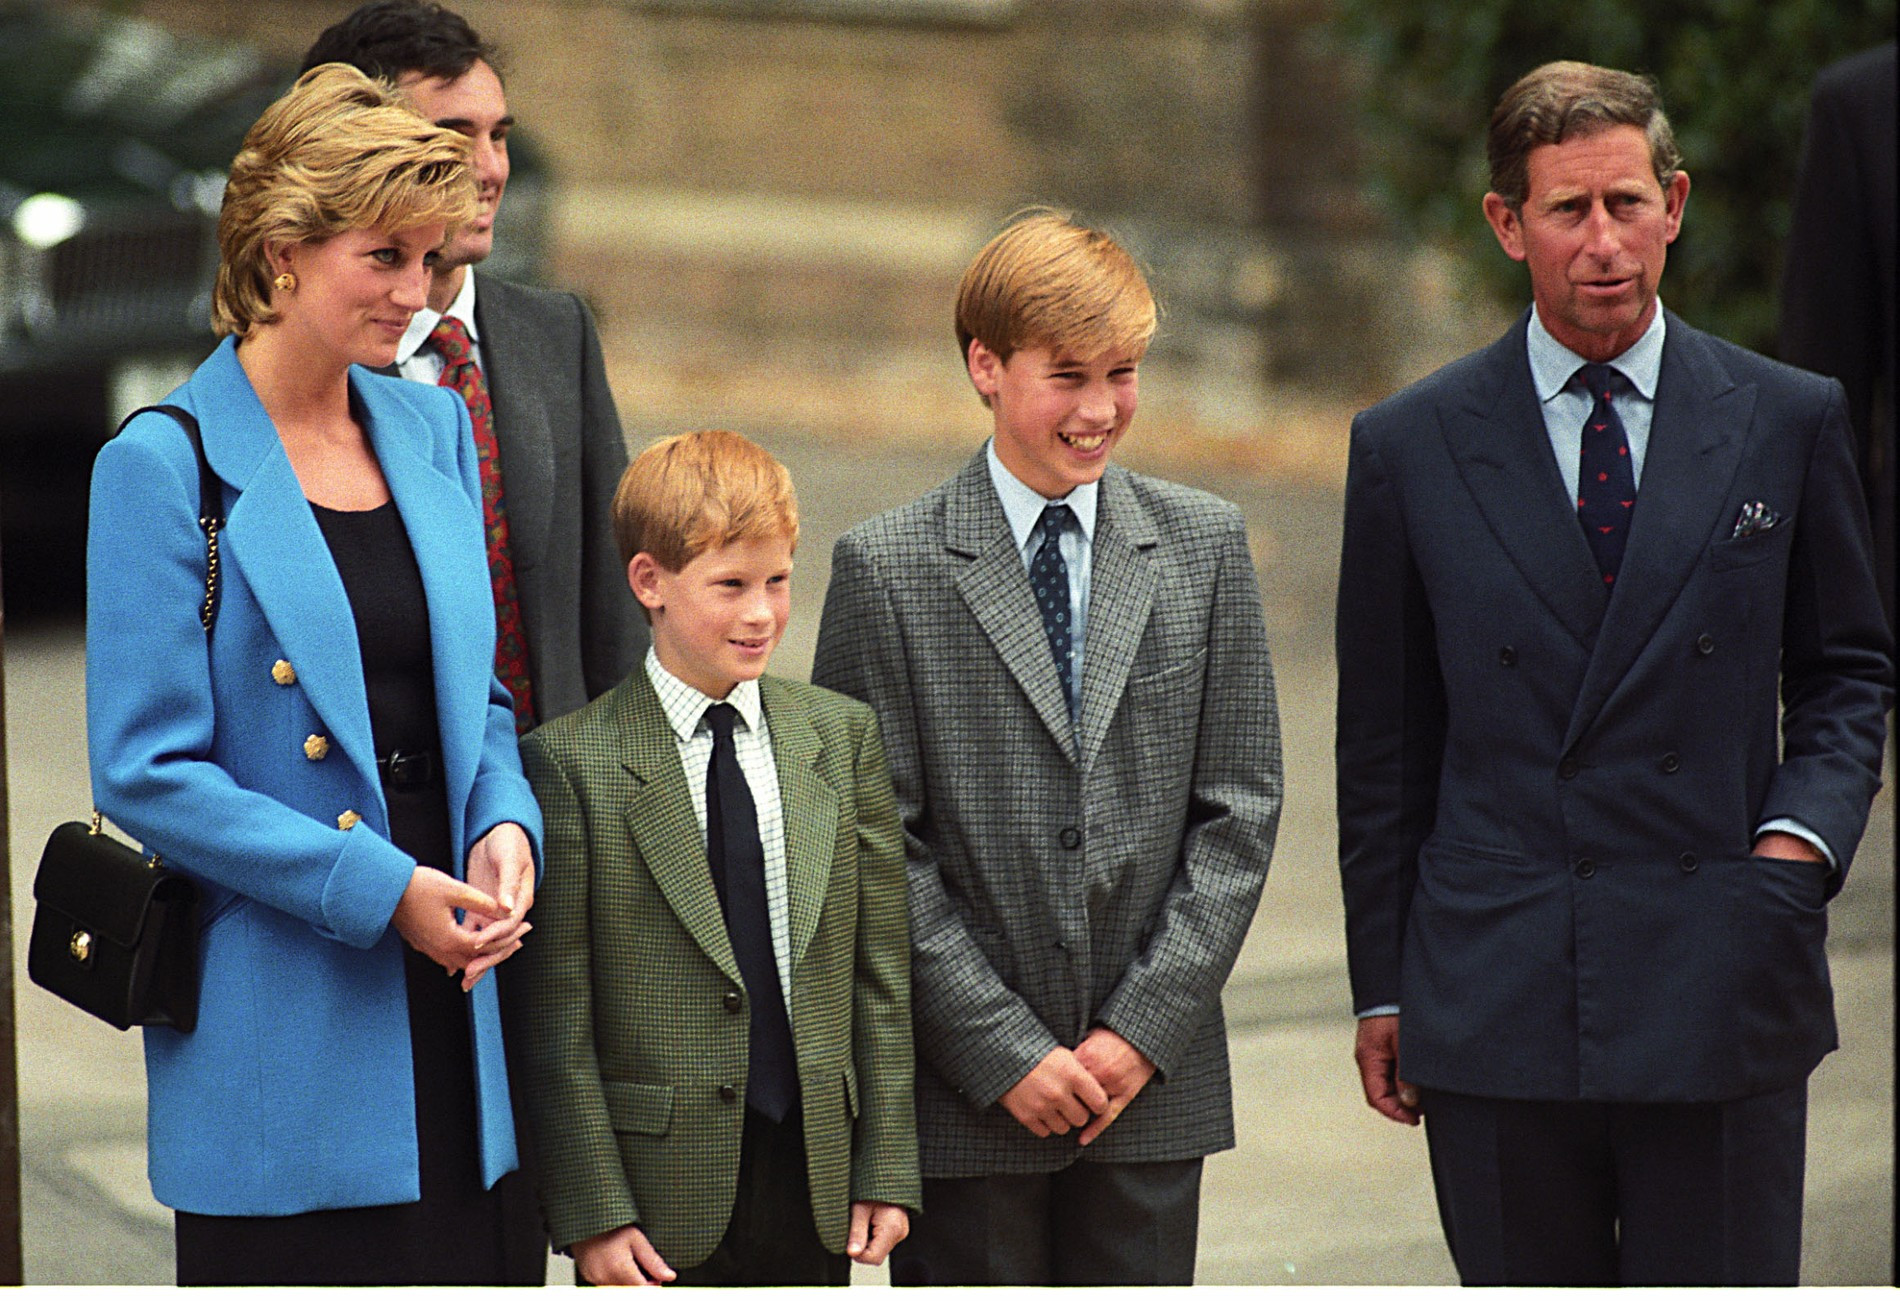 Принцесса Диана и король Карл III с сыновьями Уильямом и Гарри
Фото: Getty Images